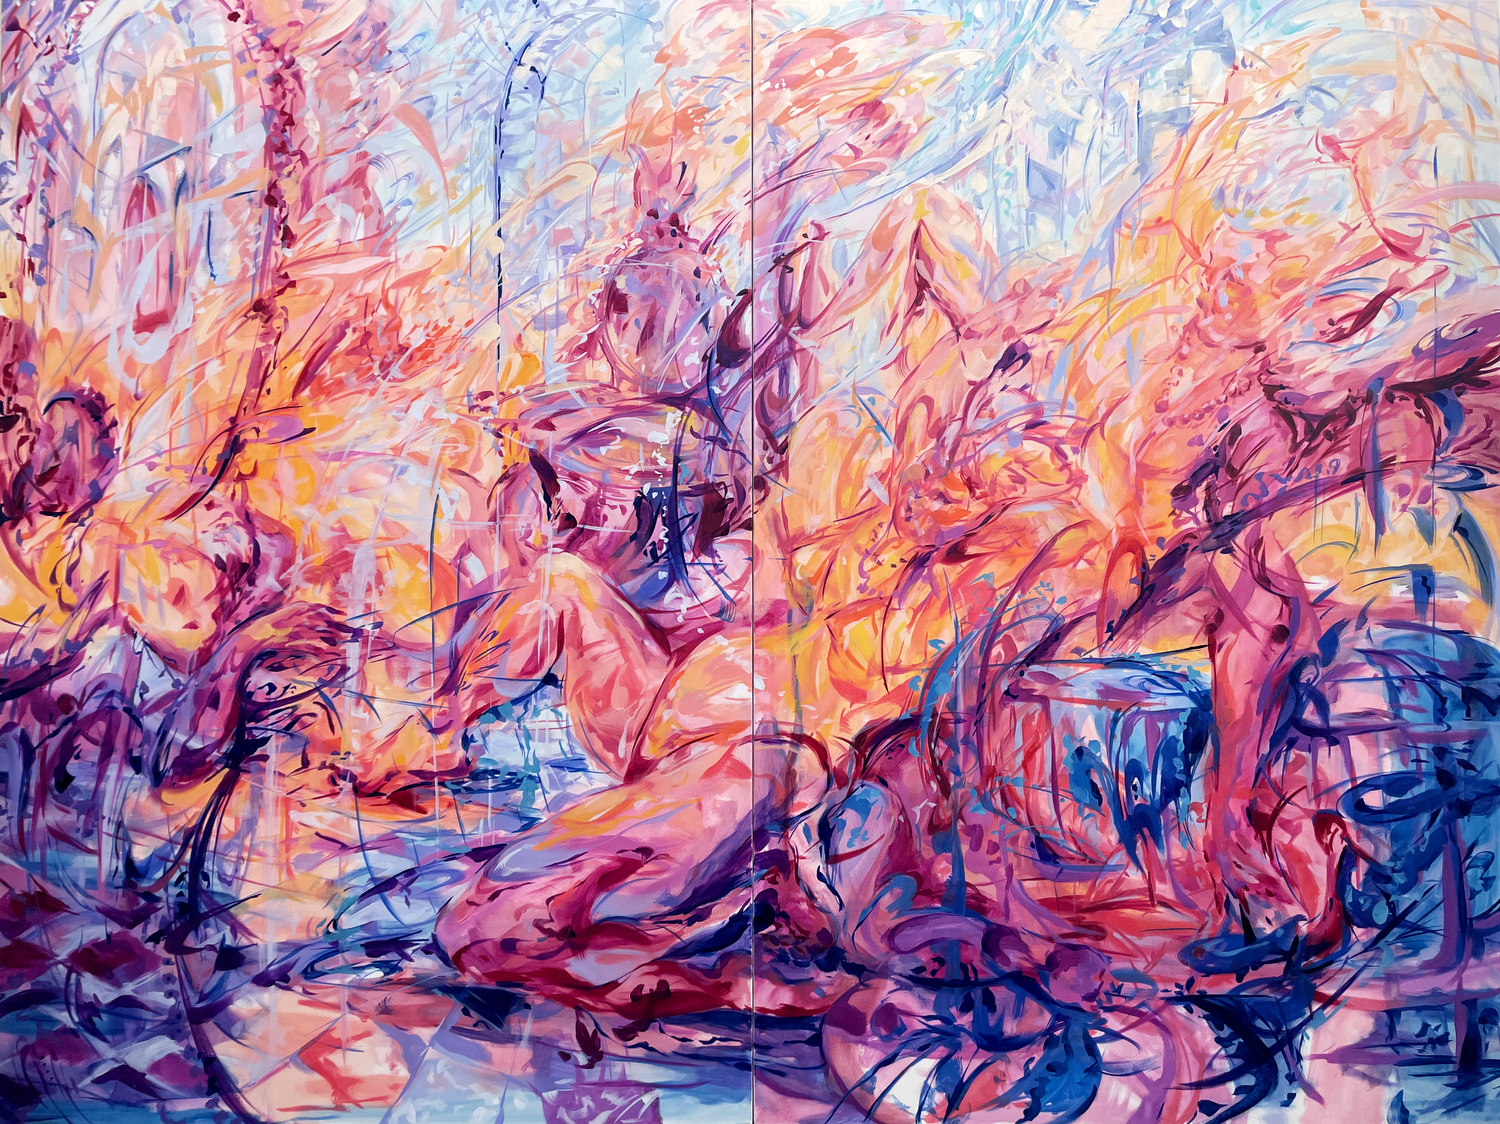 Julia Jo, Boudoir Serenade, 2022, oil on canvas, 72 x 96 in